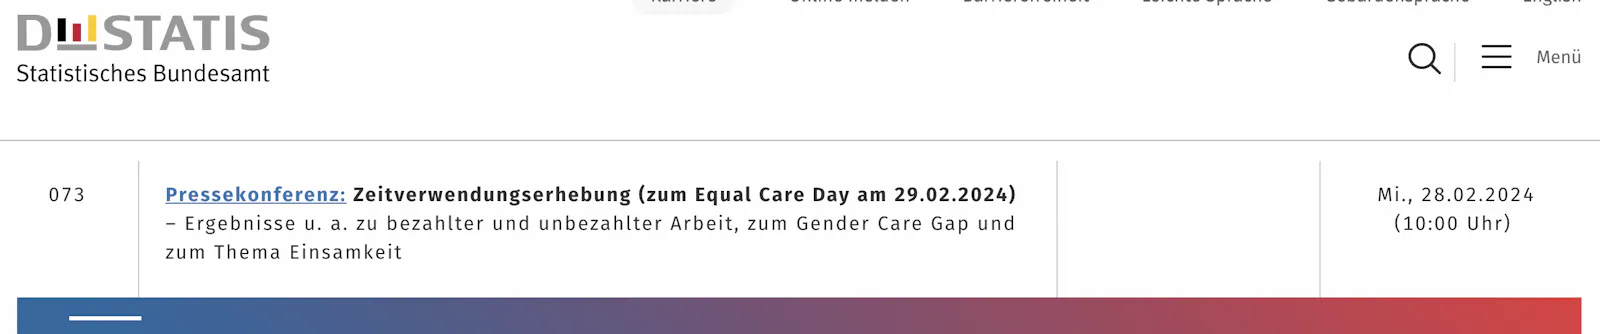 Screenshot von destatis.de - Ankündigung einer Pressekonferenz "Zeitverwendungserhebung (zum Equal Care Day am 29.02.2024)"